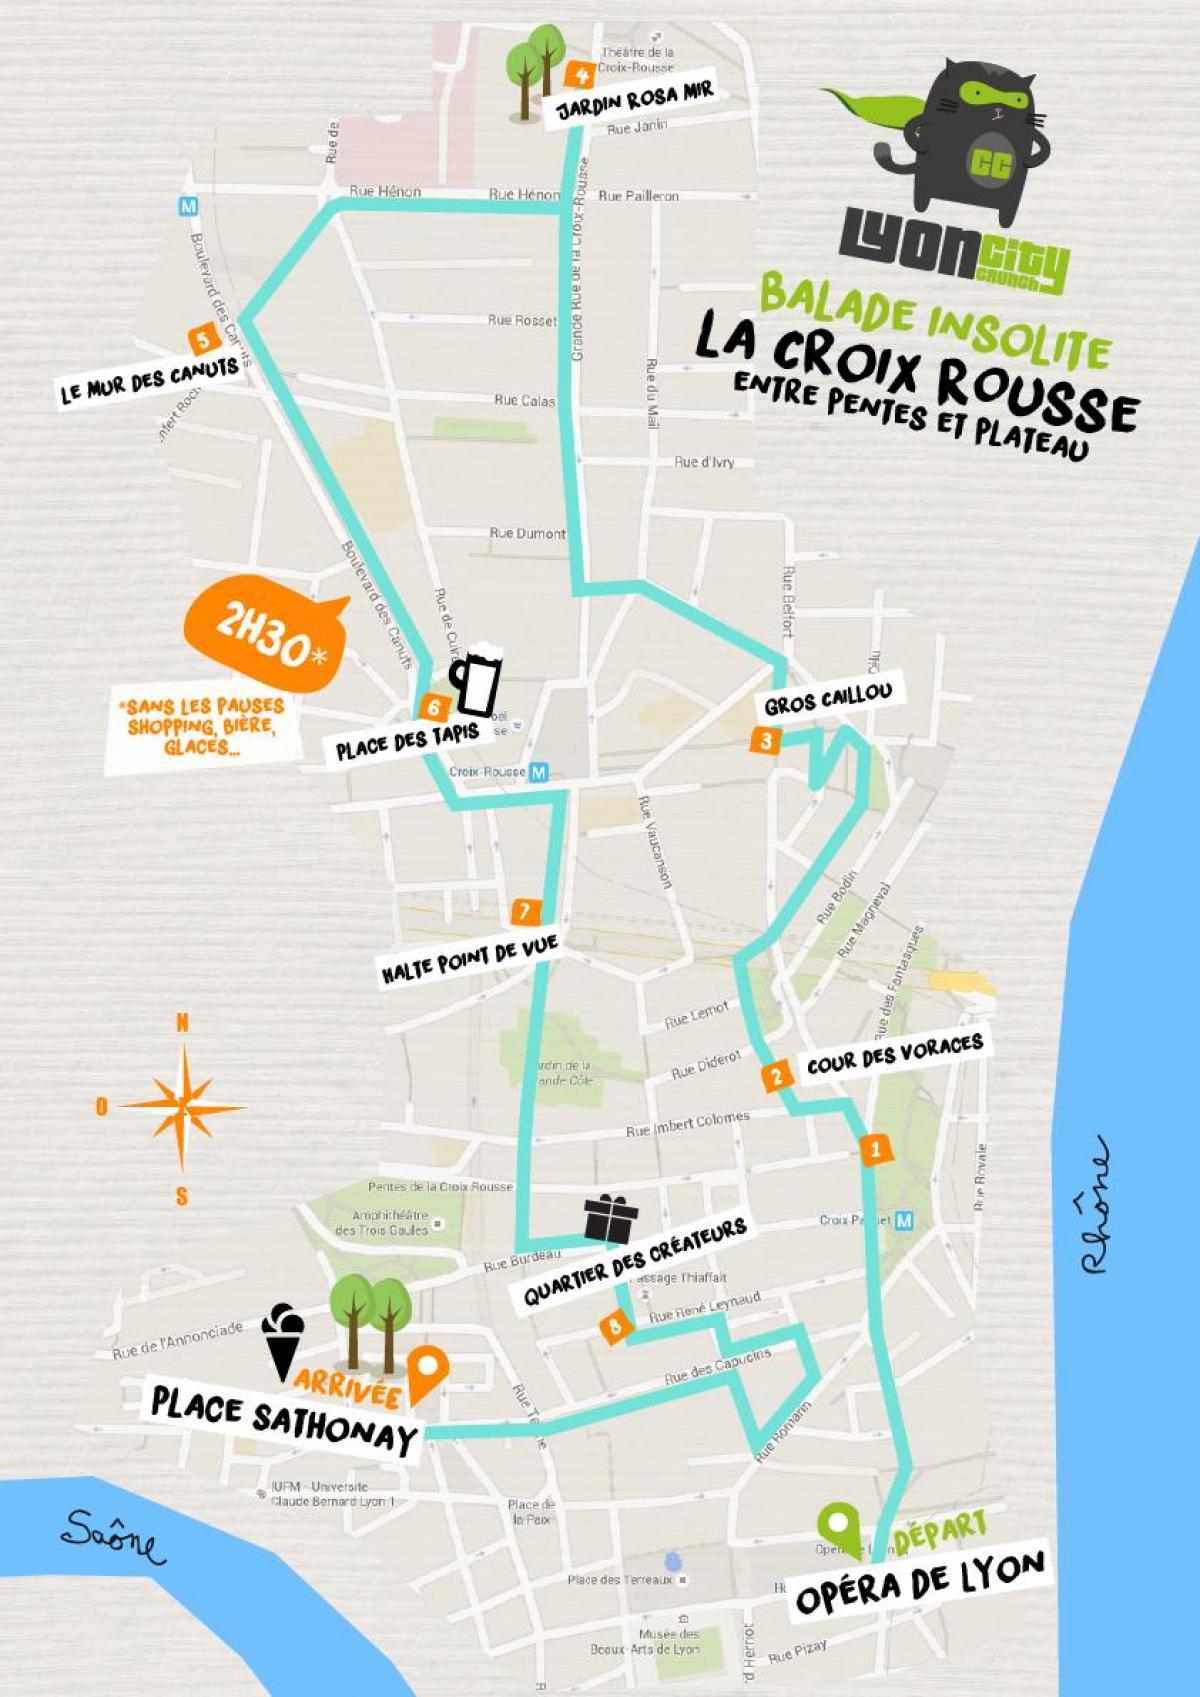 χάρτης της Lyon croix rousse 